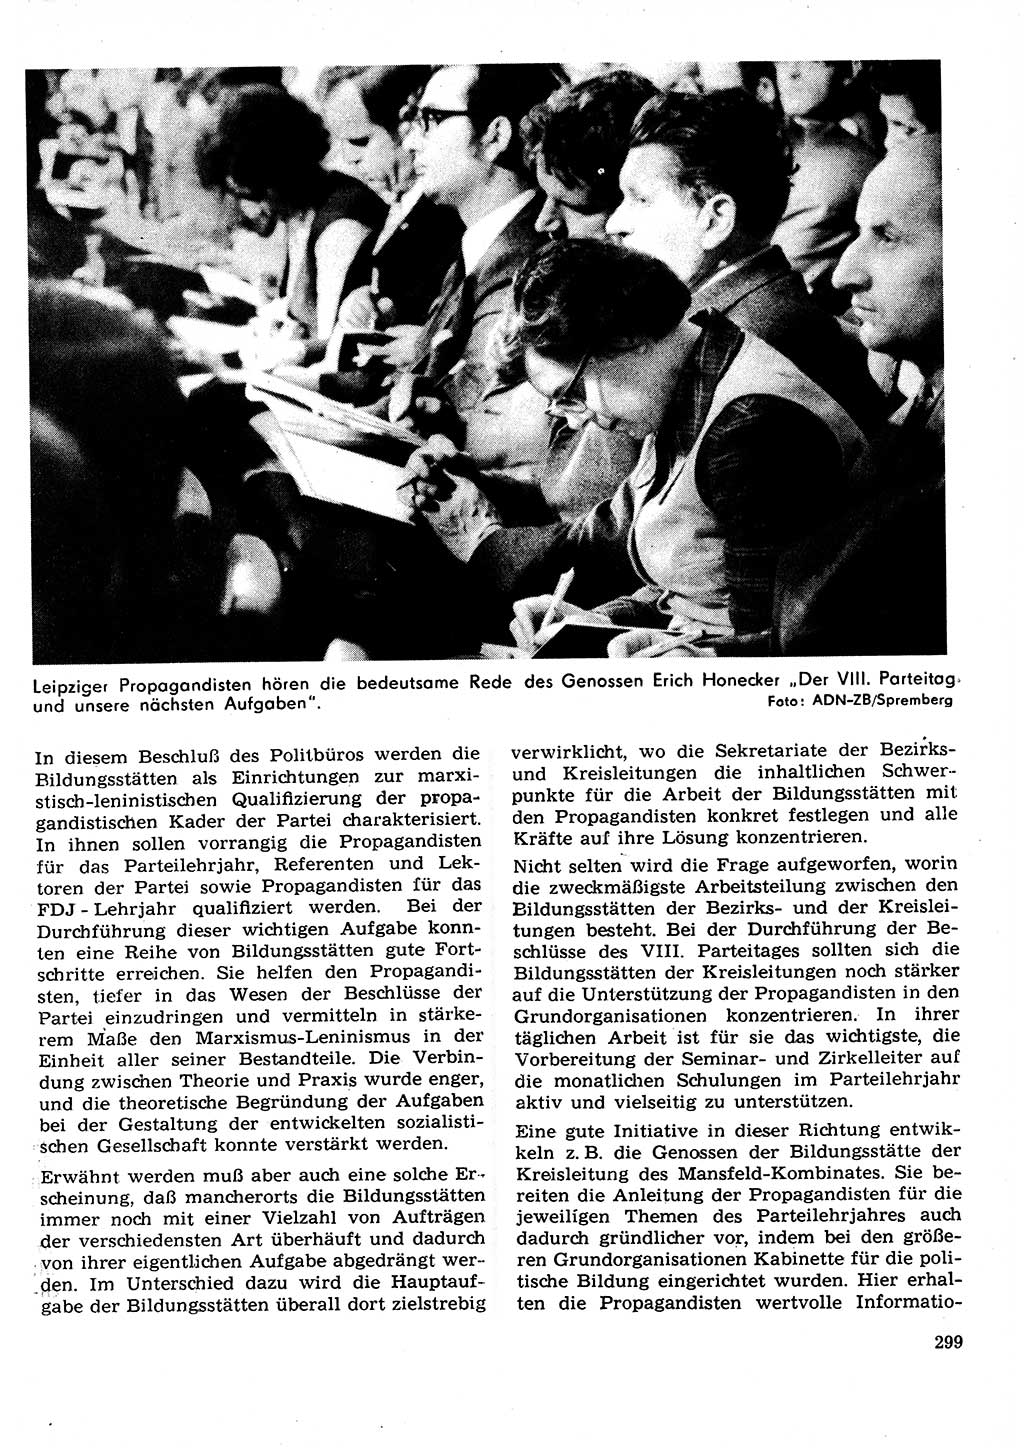 Neuer Weg (NW), Organ des Zentralkomitees (ZK) der SED (Sozialistische Einheitspartei Deutschlands) für Fragen des Parteilebens, 27. Jahrgang [Deutsche Demokratische Republik (DDR)] 1972, Seite 299 (NW ZK SED DDR 1972, S. 299)